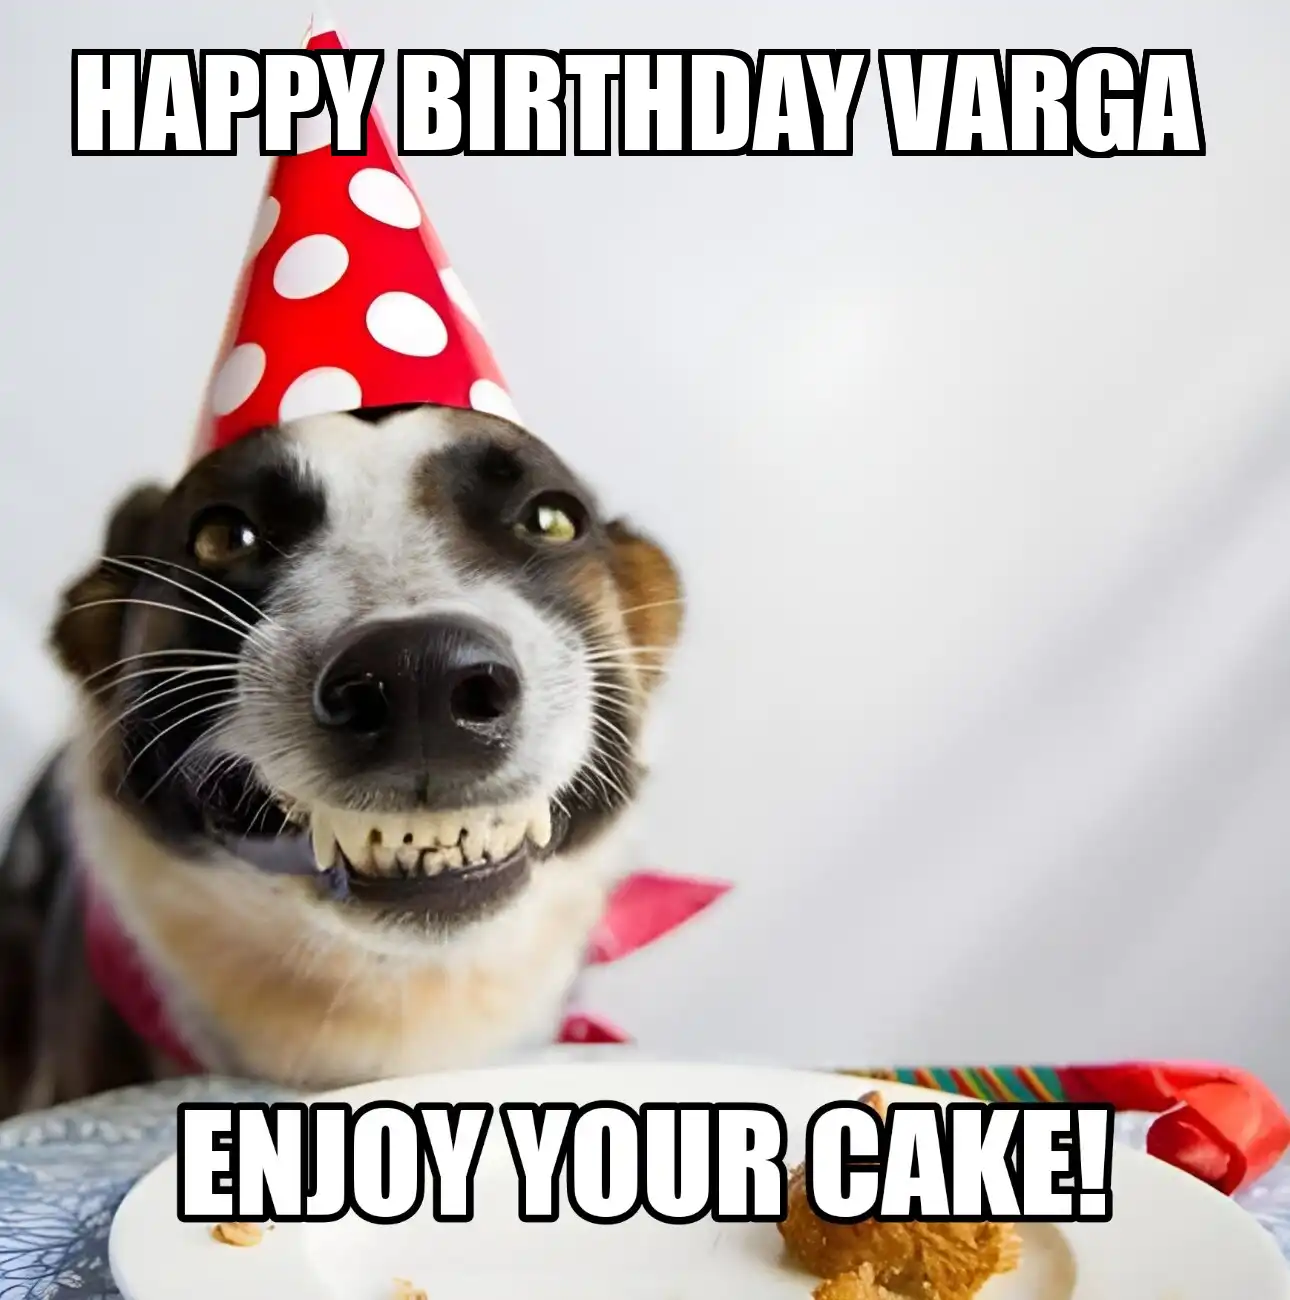 Happy Birthday Varga Enjoy Your Cake Dog Meme